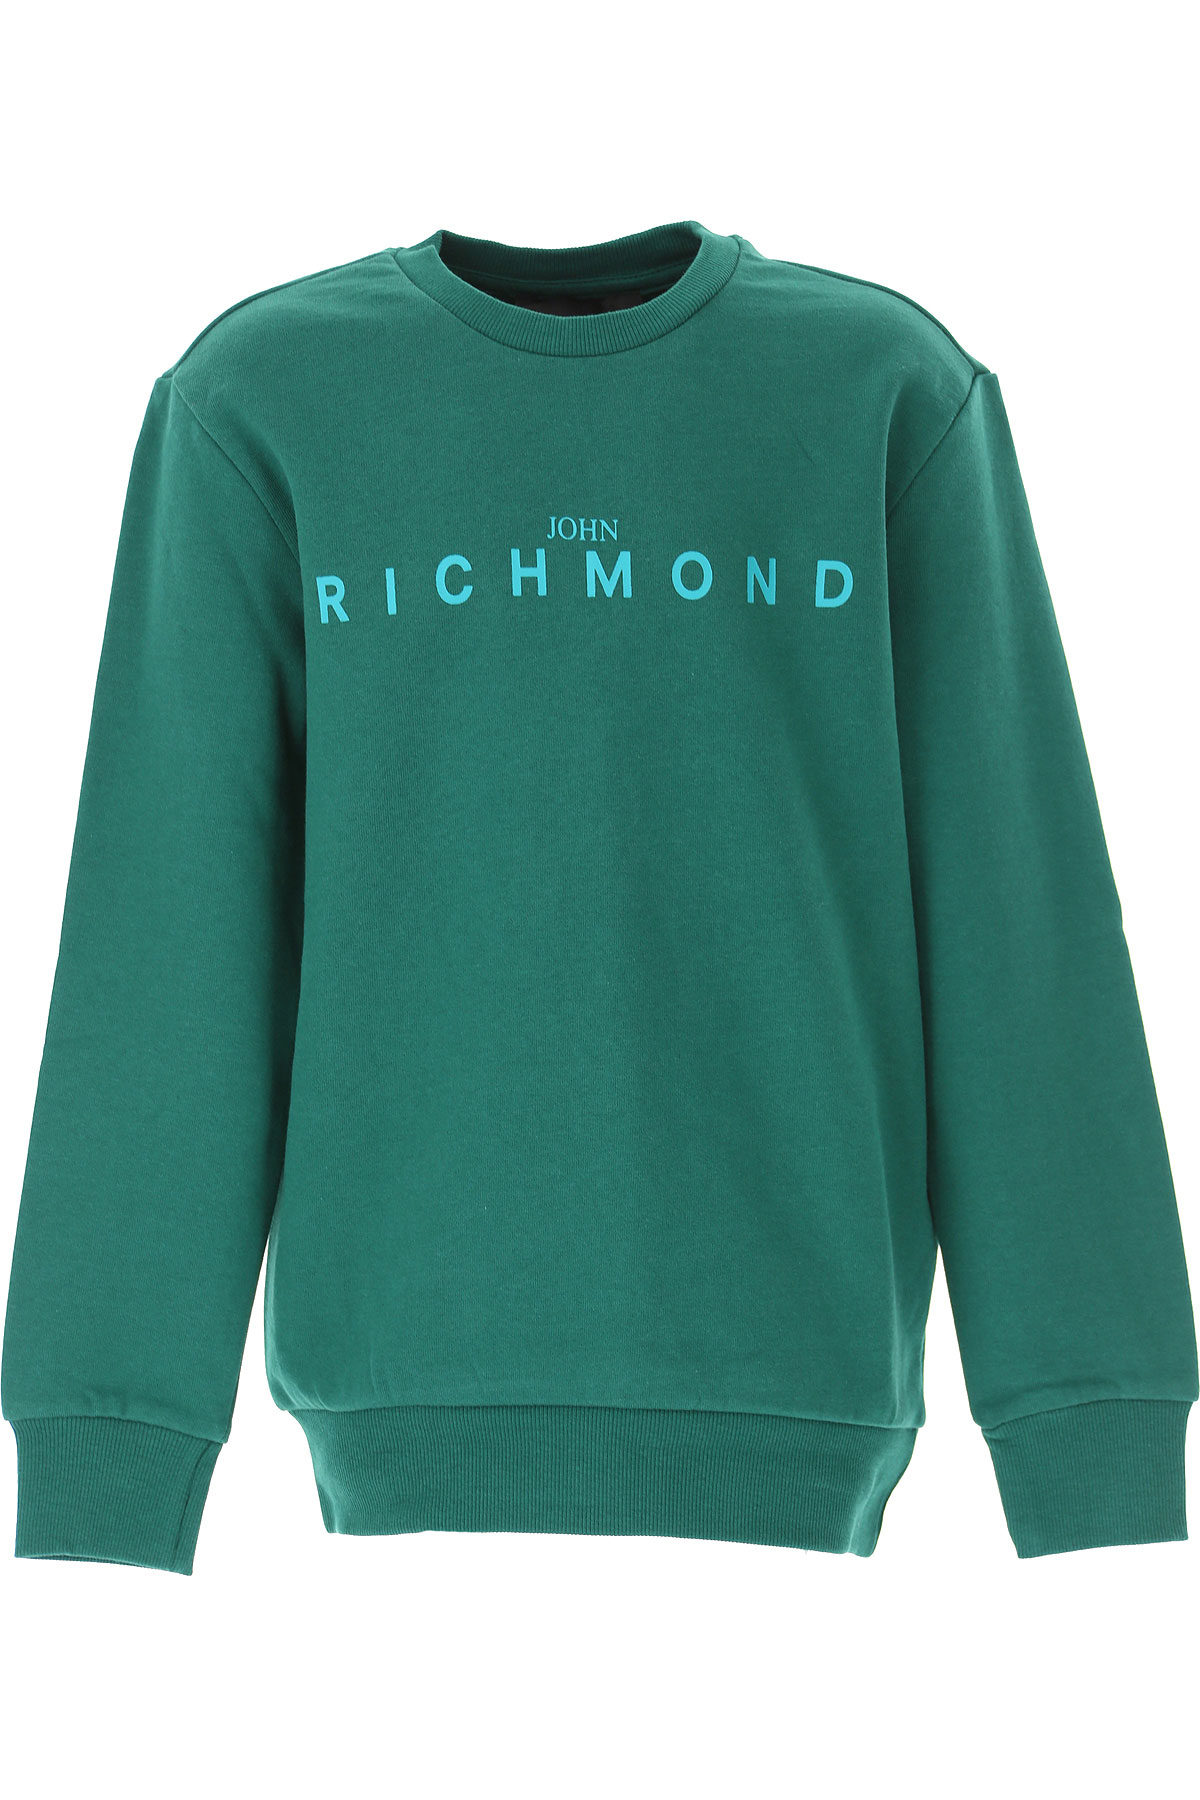 Richmond Kinder Sweatshirt & Kapuzenpullover für Jungen Günstig im Sale, Grün, Baumwolle, 2017, 10Y 12Y 14Y 4Y 6Y 8Y